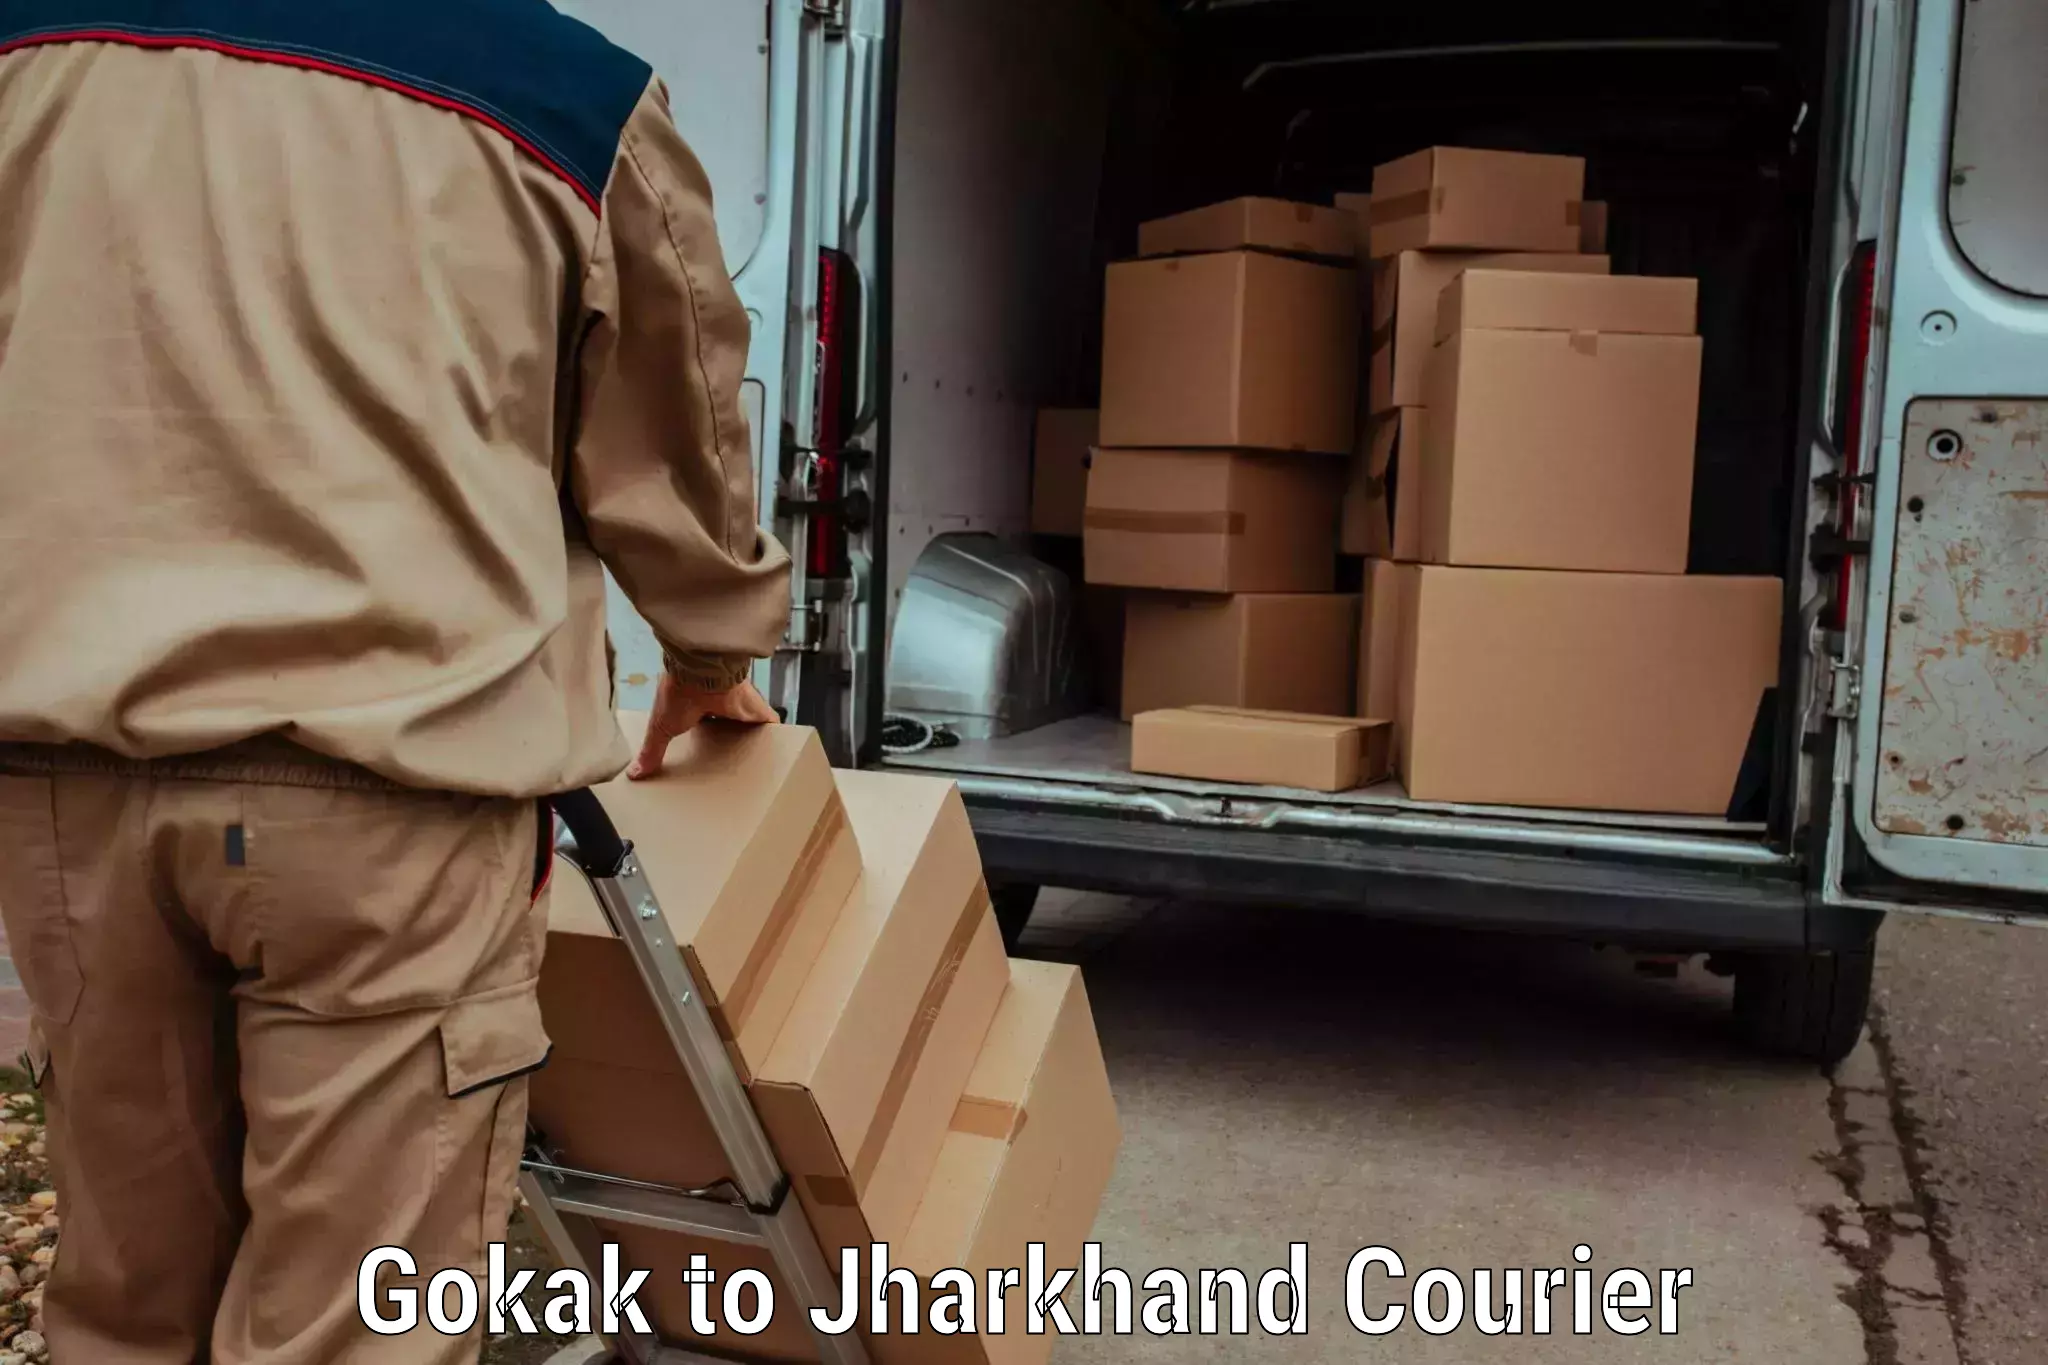 User-friendly courier app Gokak to Tisri